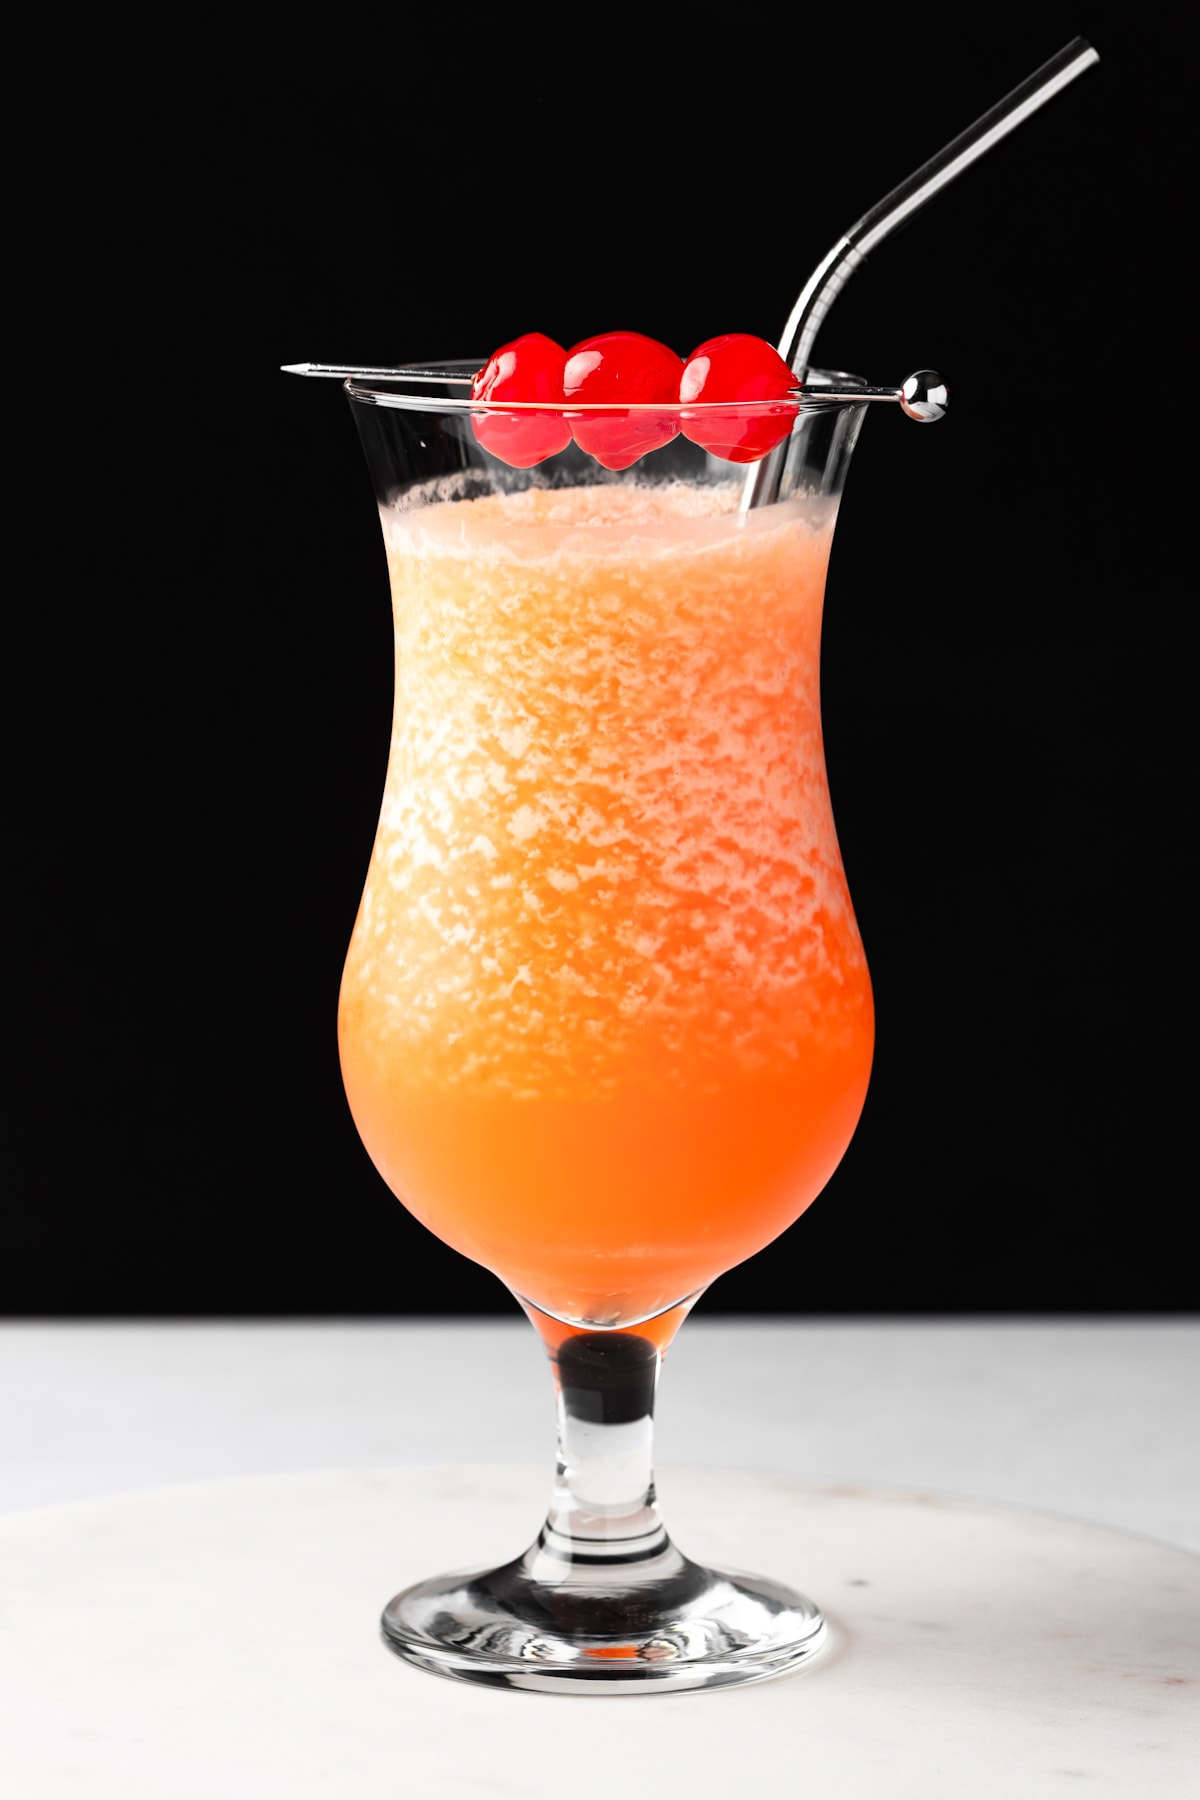 An orange frozen hurricane cocktail garnished with maraschino cherries on a black background.